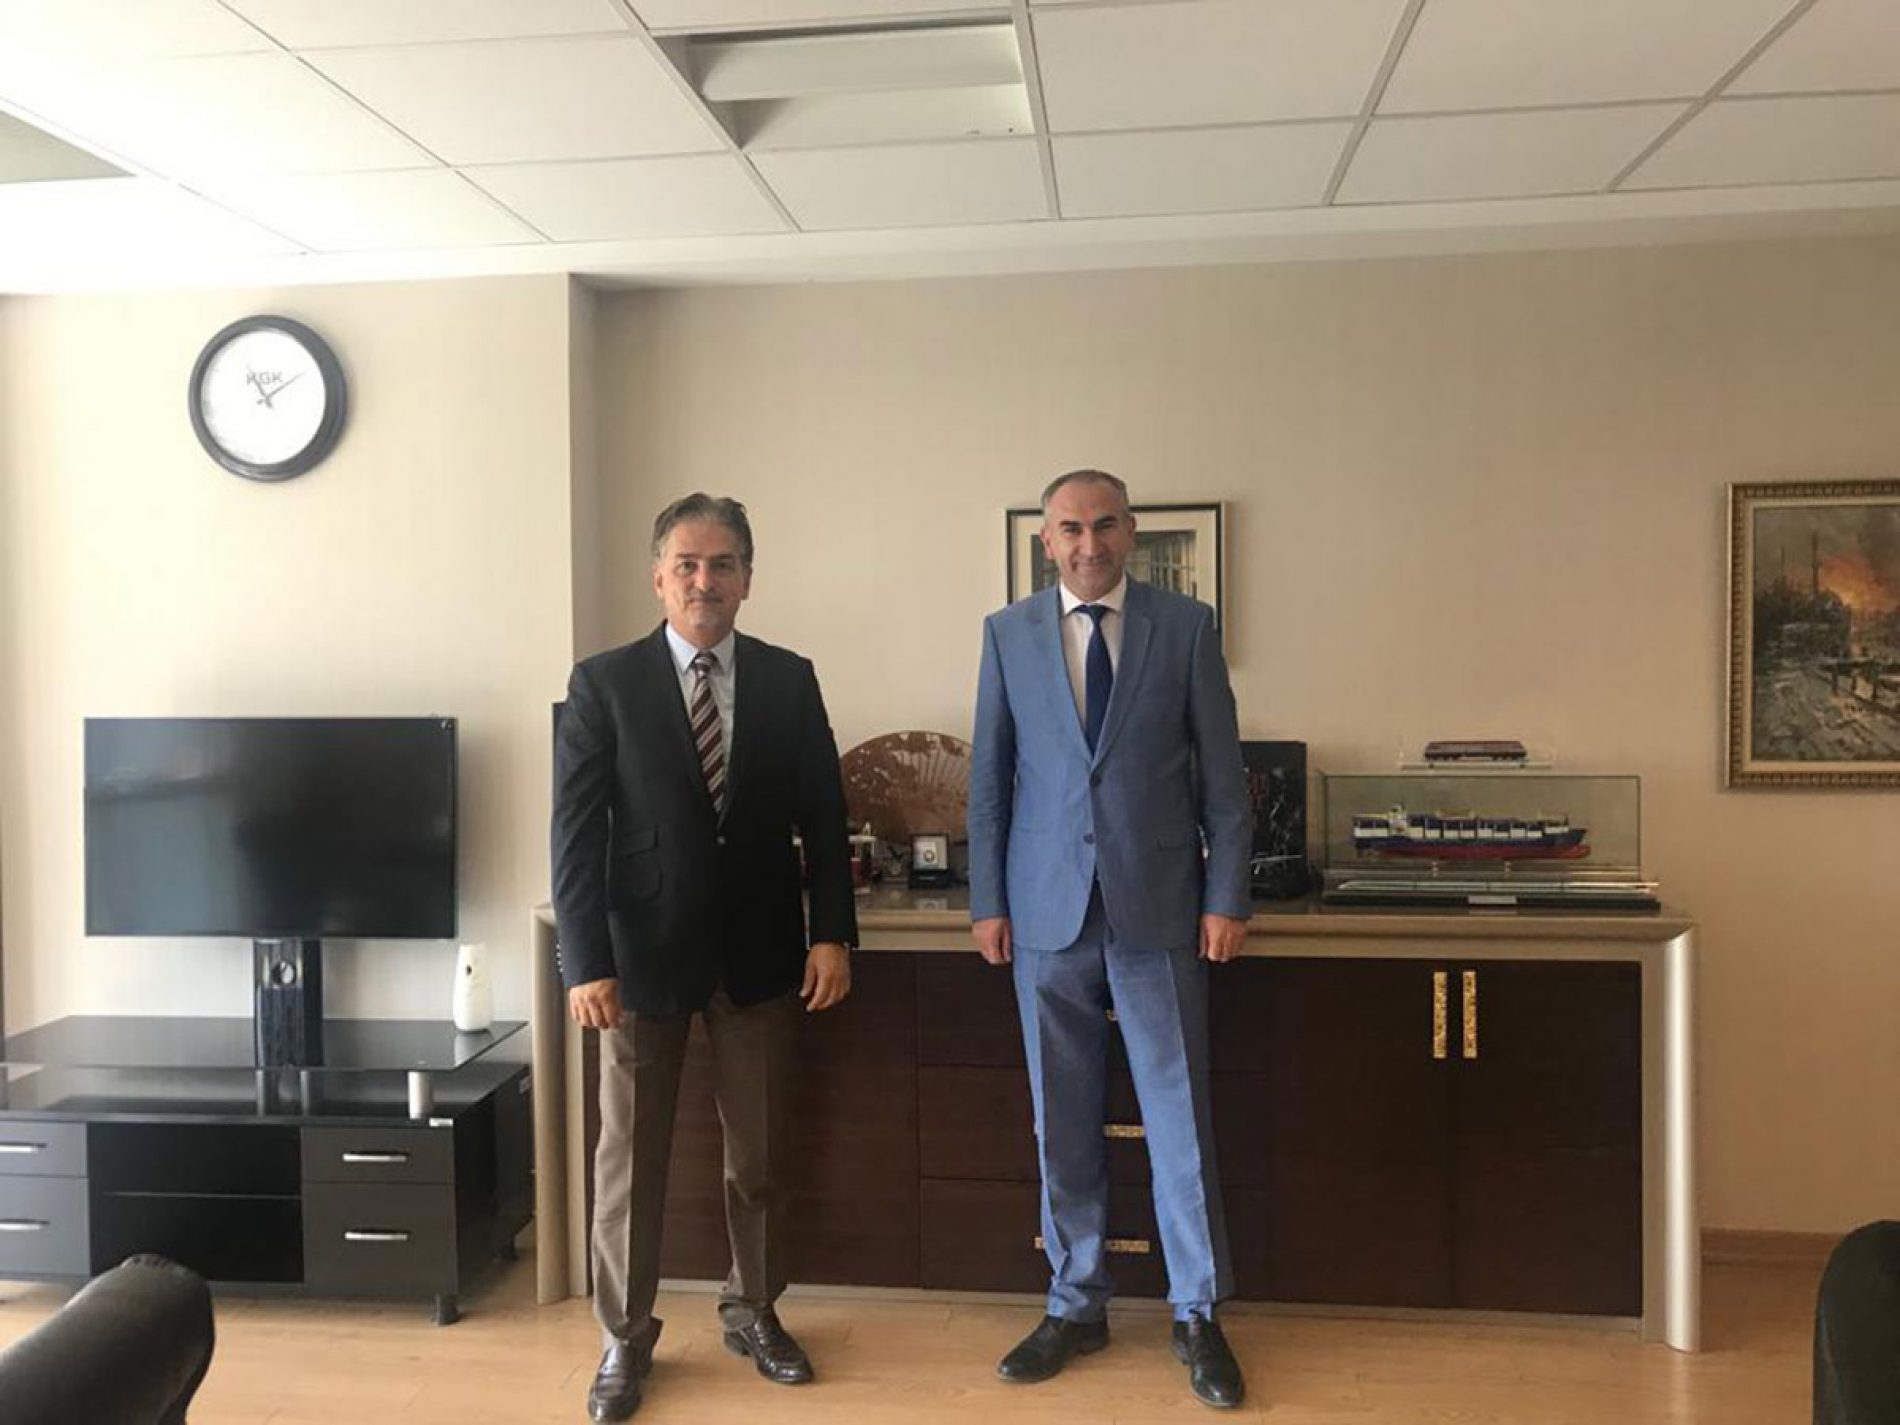 协会会长İhsan BEŞER访问了土耳其经济政策委员会会员Hakan YURDAKUL